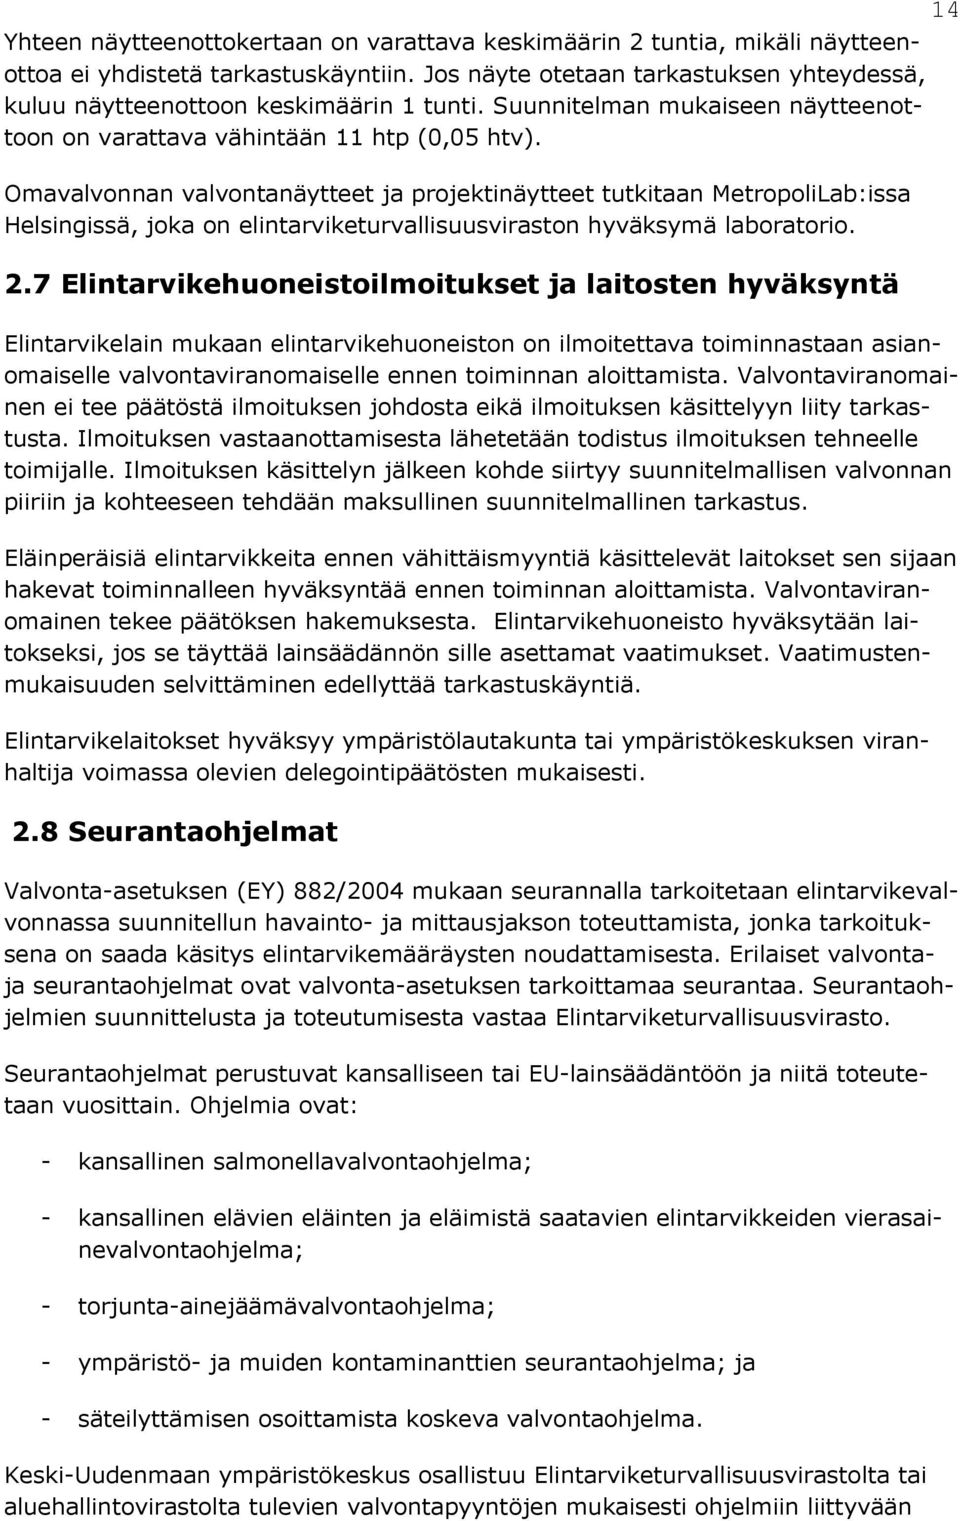 Omavalvonnan valvontanäytteet ja projektinäytteet tutkitaan MetropoliLab:issa Helsingissä, joka on elintarviketurvallisuusviraston hyväksymä laboratorio. 2.